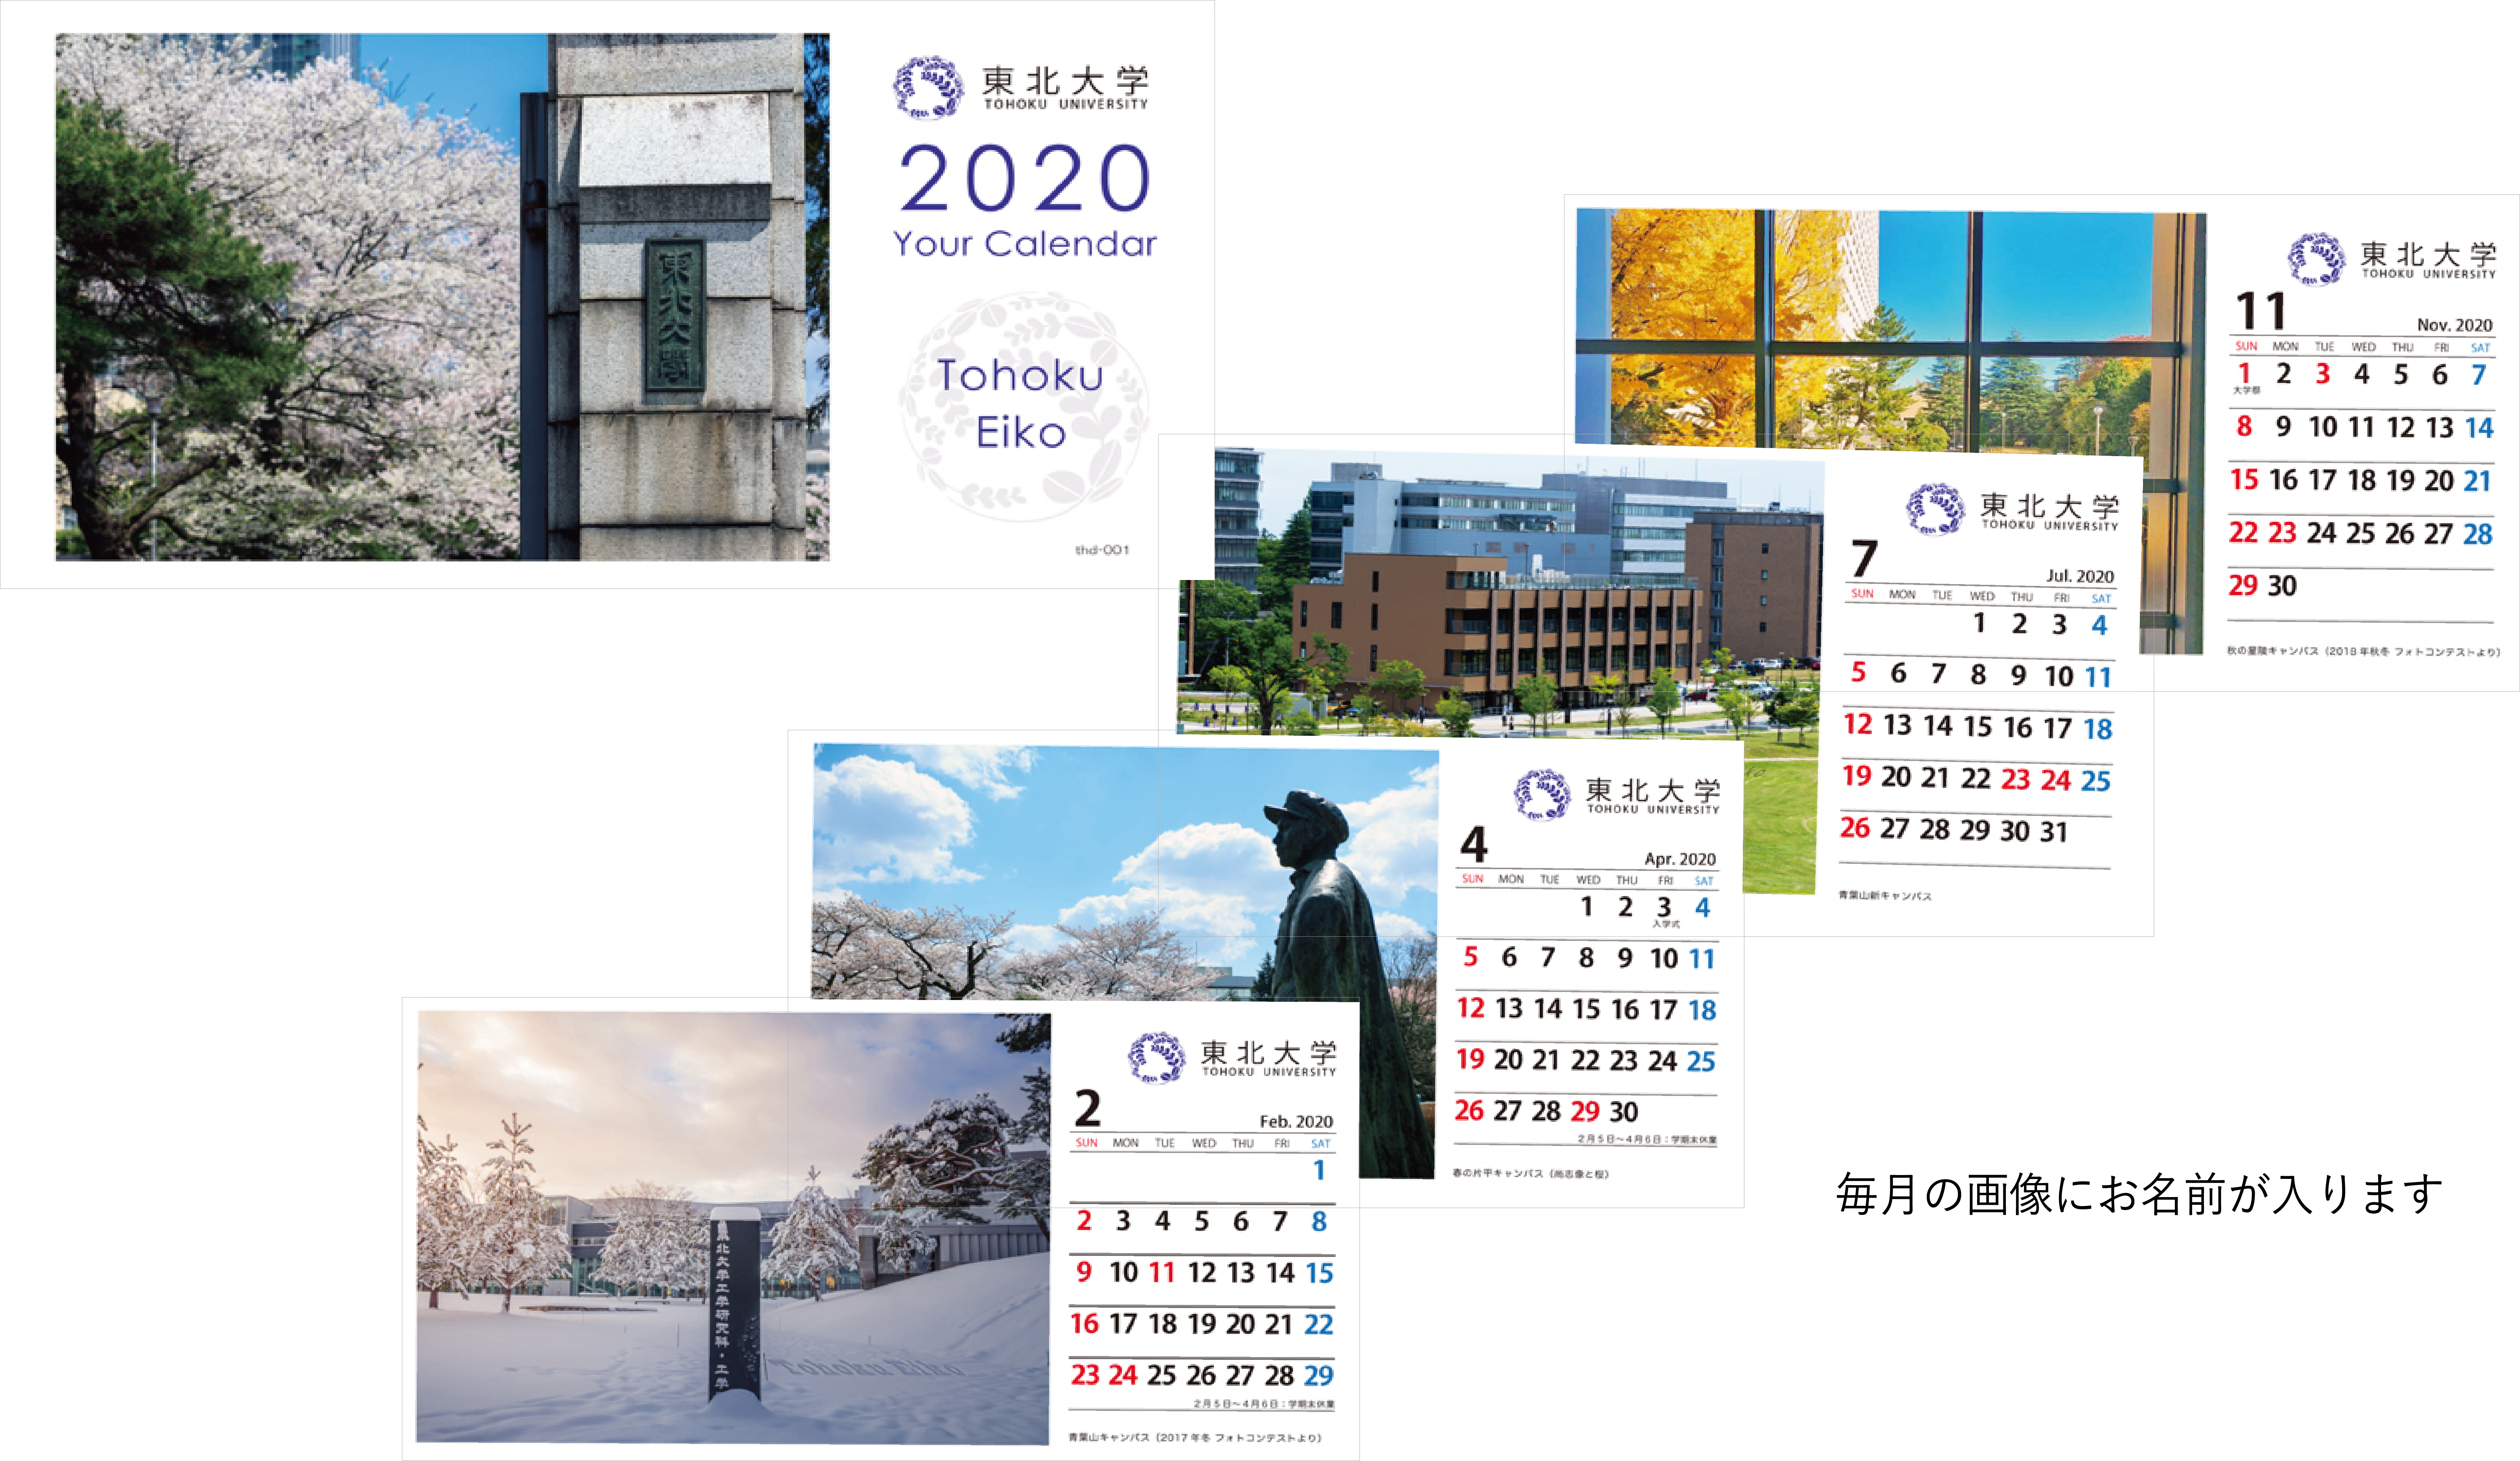 /></p>
<br>
<p>四季折々のキャンパスの風景と大学の年間予定がわかる卓上カレンダーです。お名前を入れてお届けします。</p>



<p class=